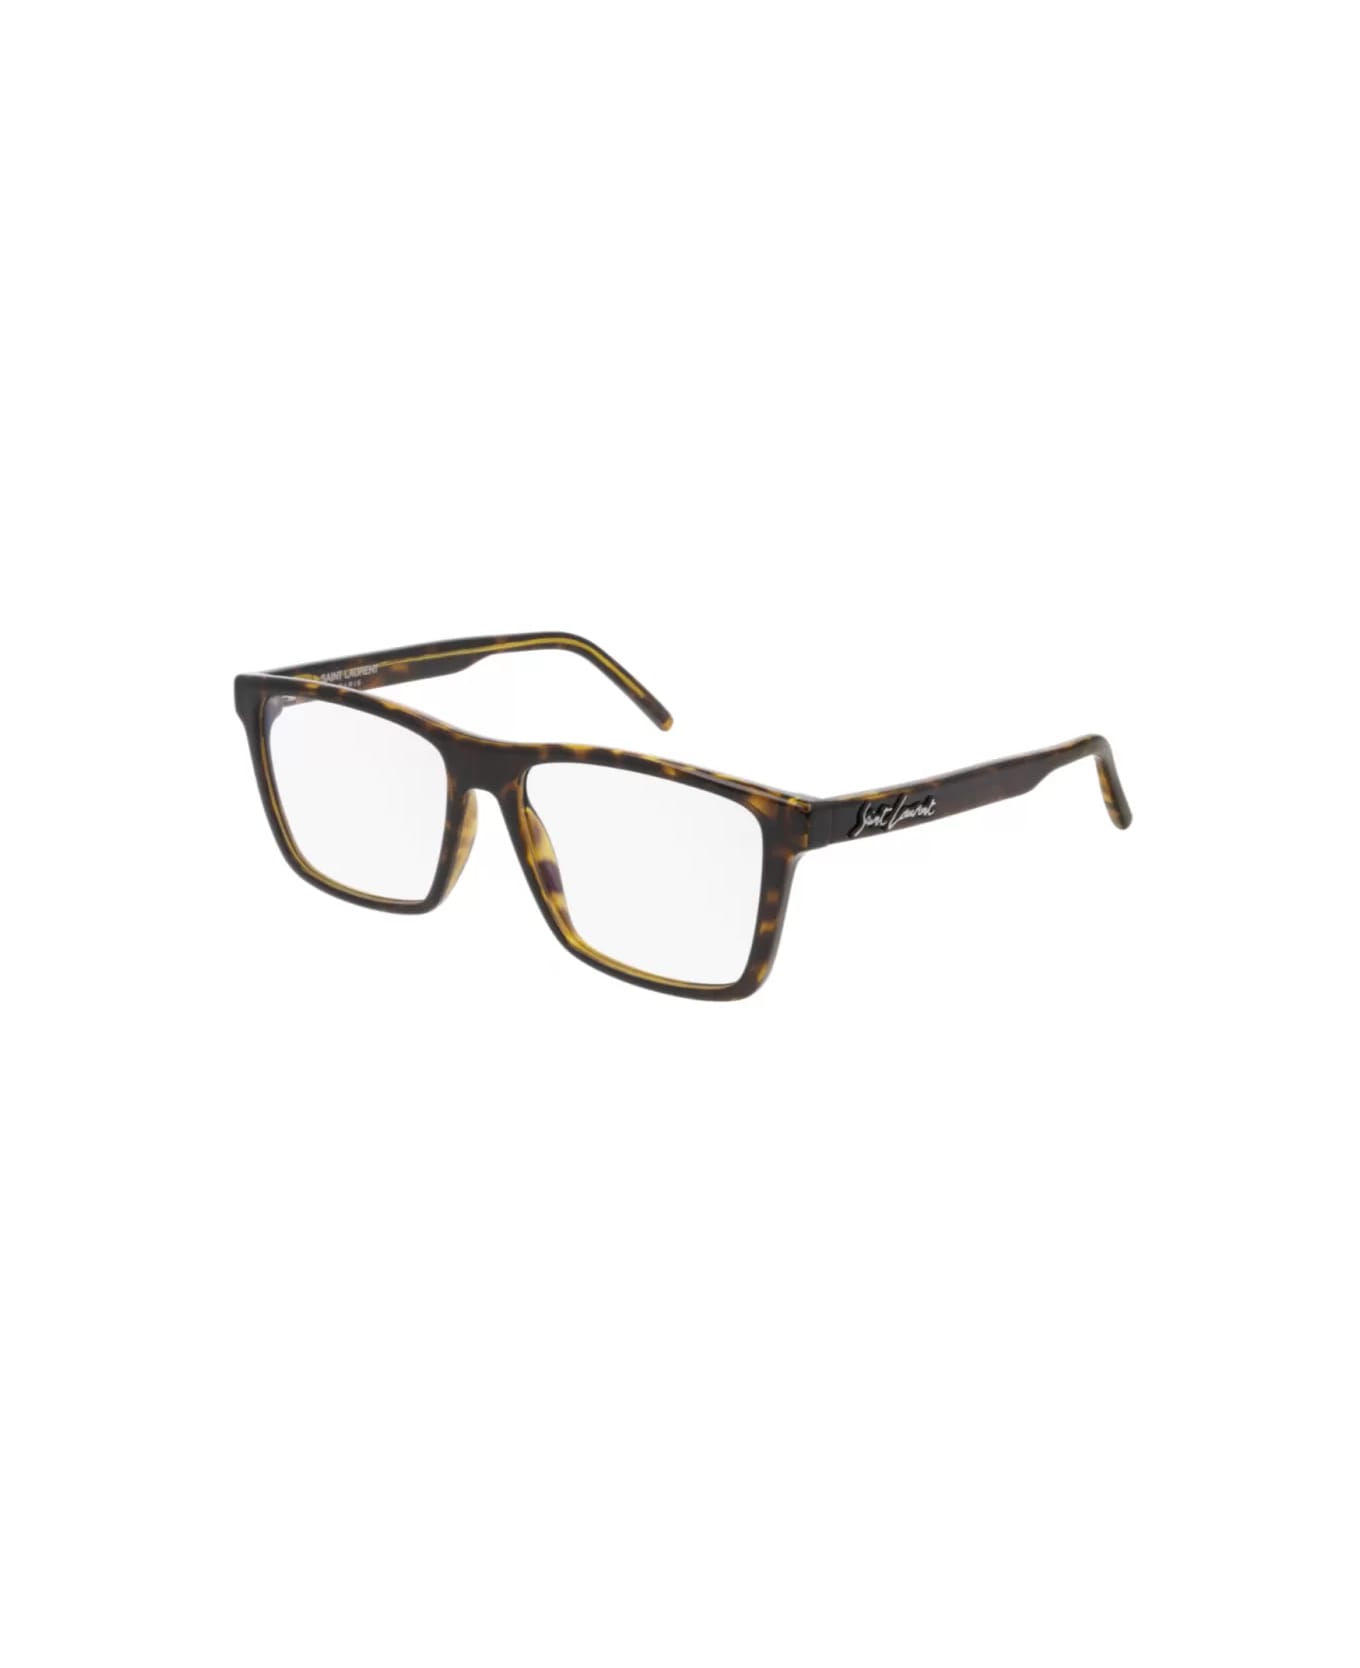 Saint Laurent Eyewear SL 337 002 Glasses - Tartarugato